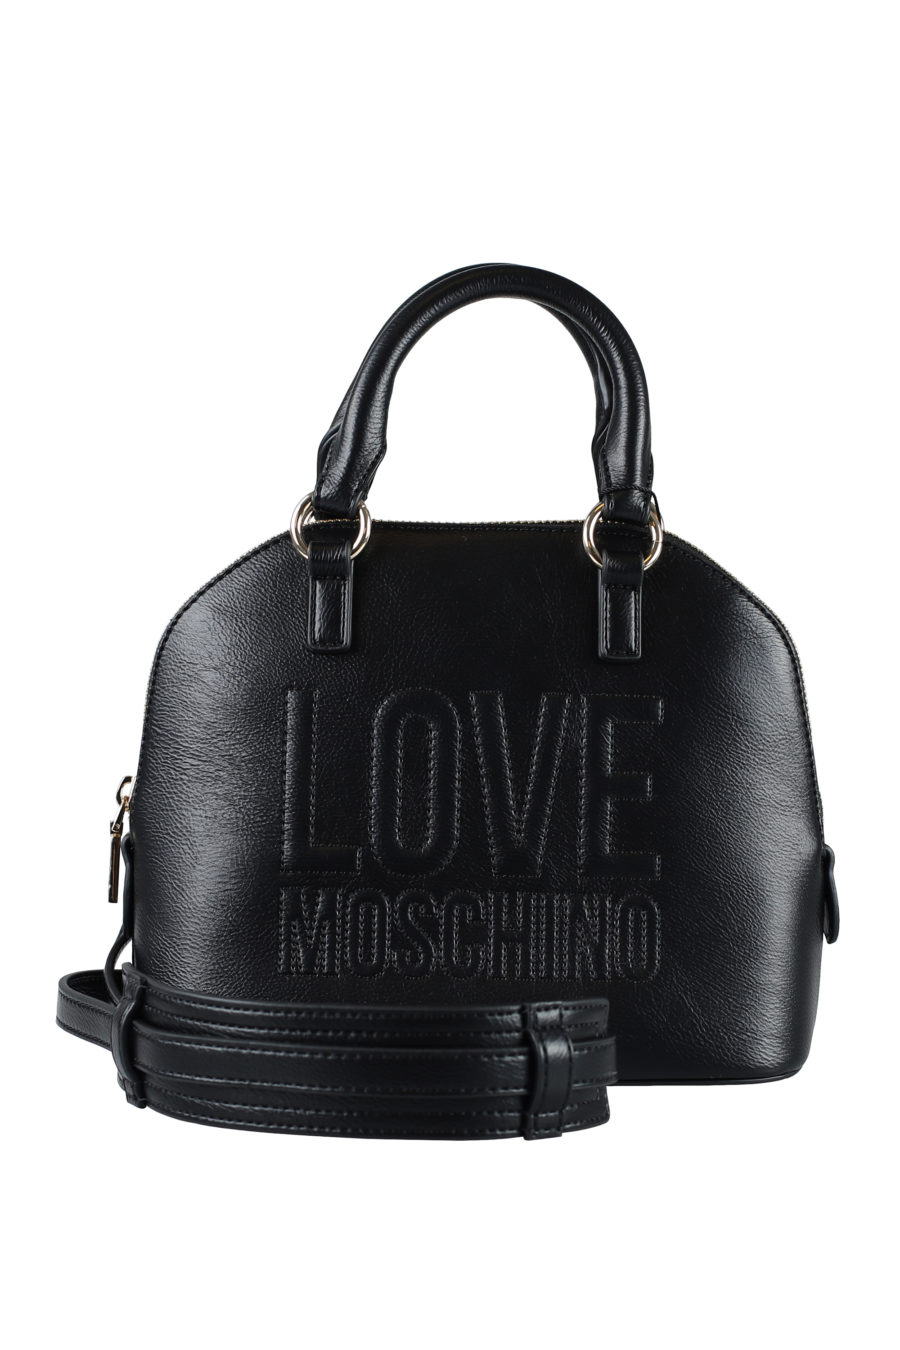 Black handbag with embroidered logo - IMG 1591